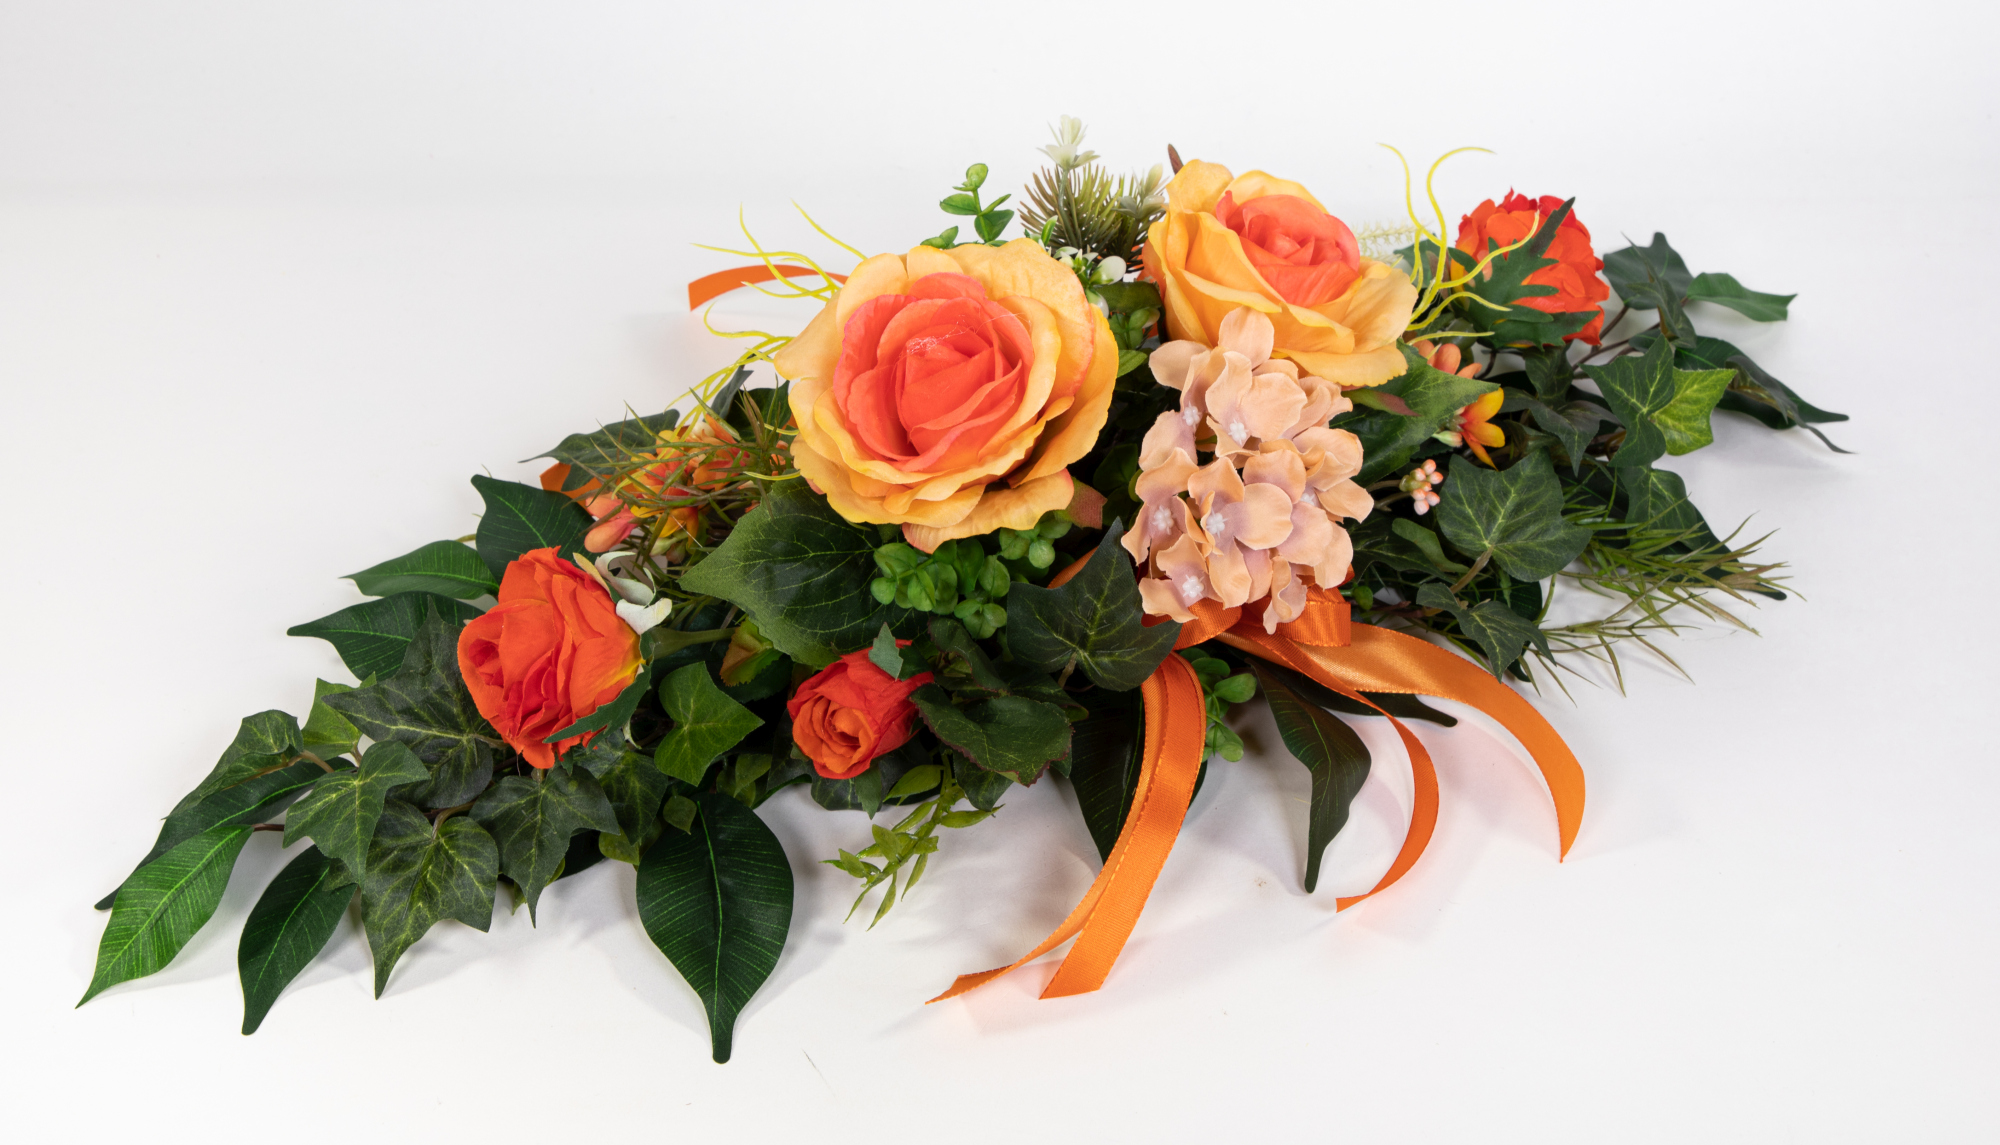 Tischgesteck länglich 60cm orange mit Rosen und Hortensie Kunstblumen künstliche Blumen